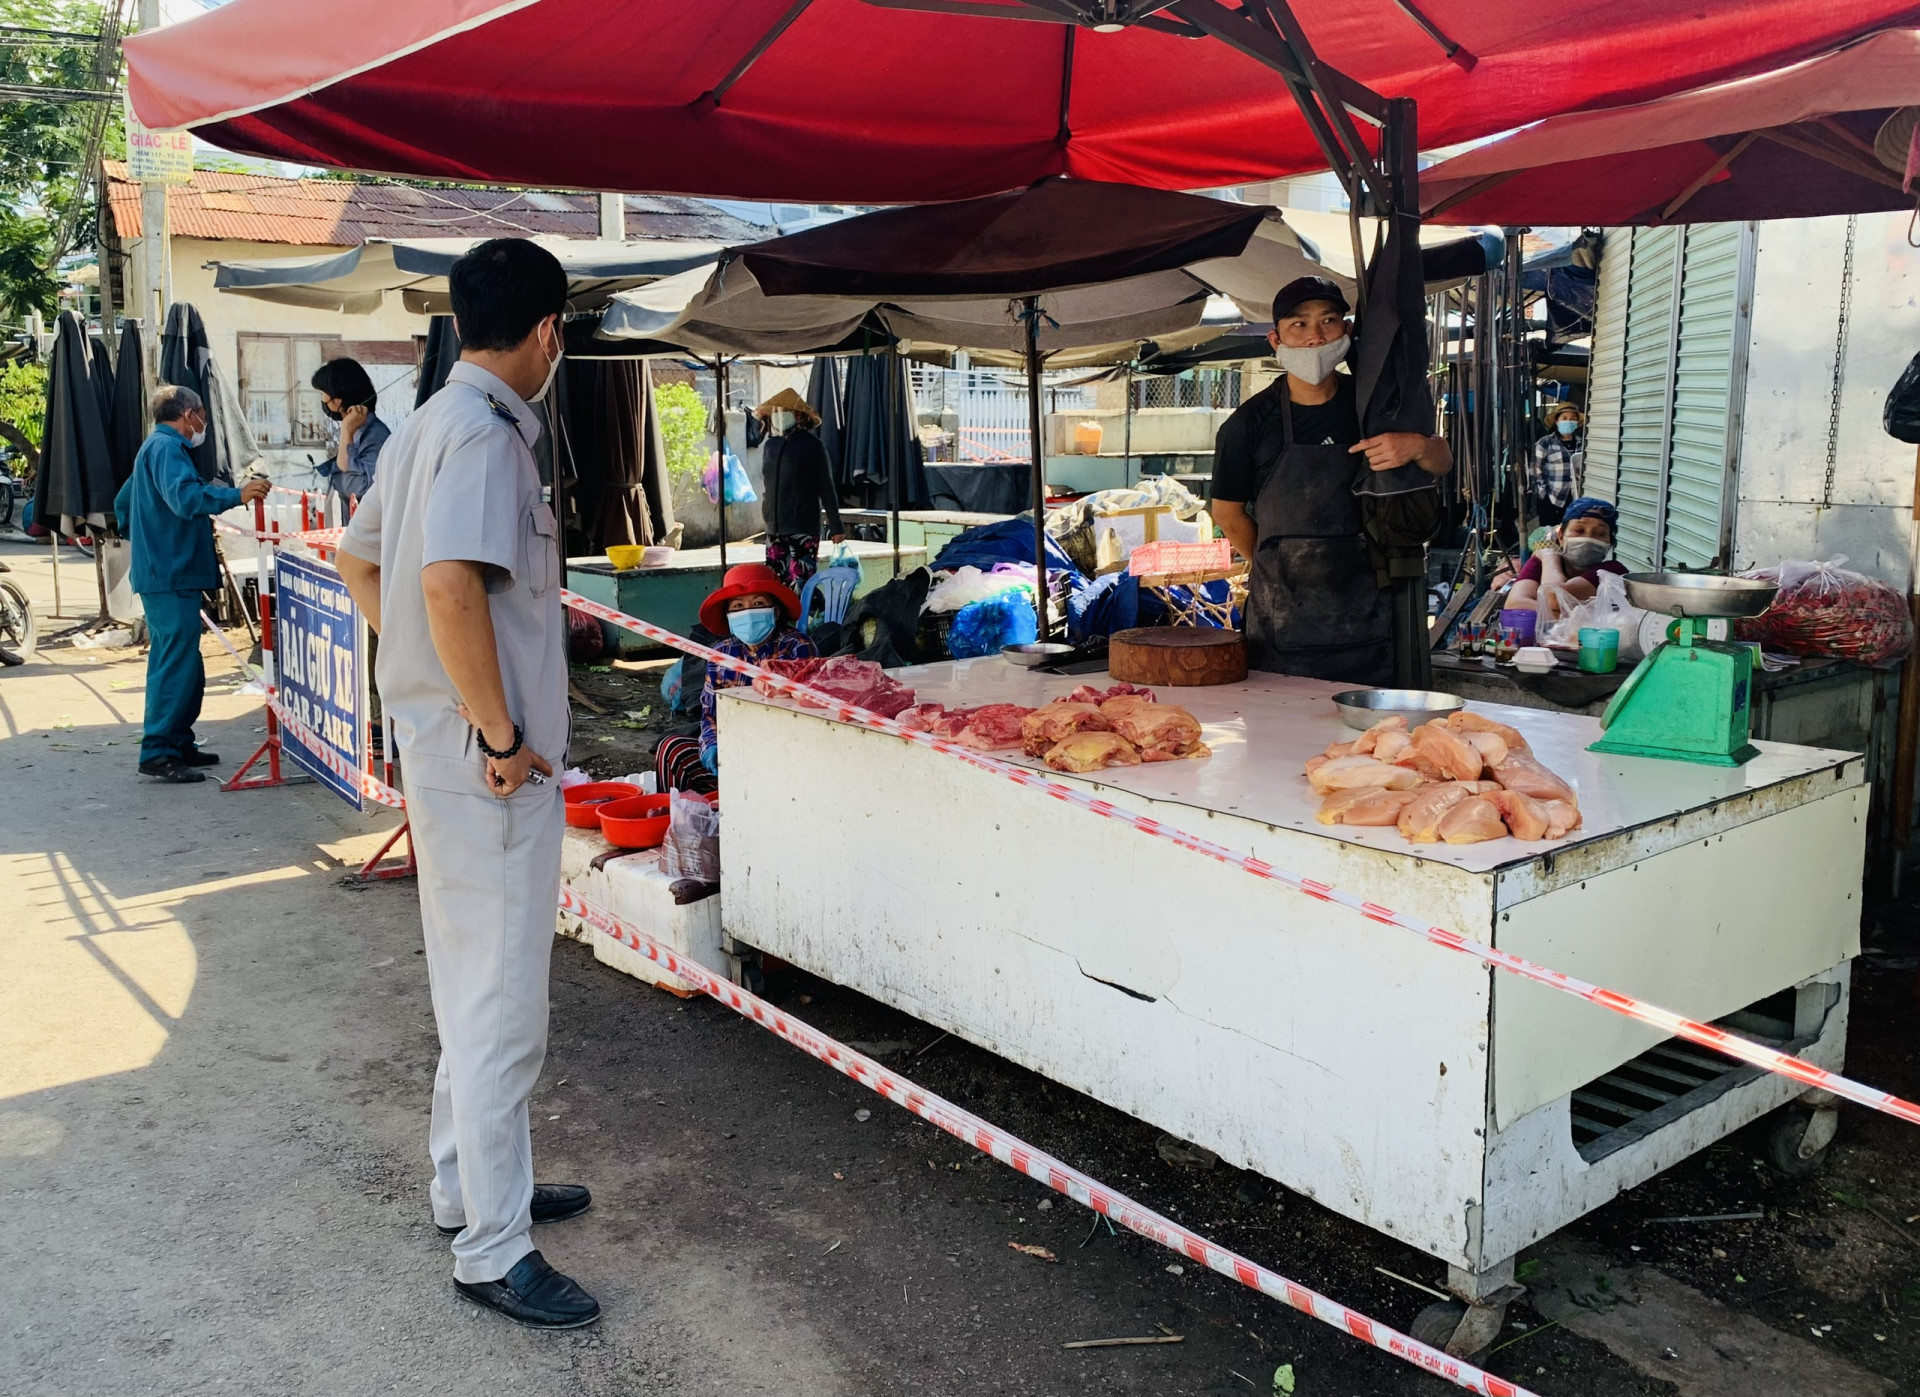 Lực lượng chức năng đã yêu cầu các tiểu thương sát các hàng rào dây quanh chợ Đầm tạm dừng kinh doanh từ ngày 16-7 để tránh tình trạng người dân đi chợ dừng lại mua bán mà không thể kiểm soát